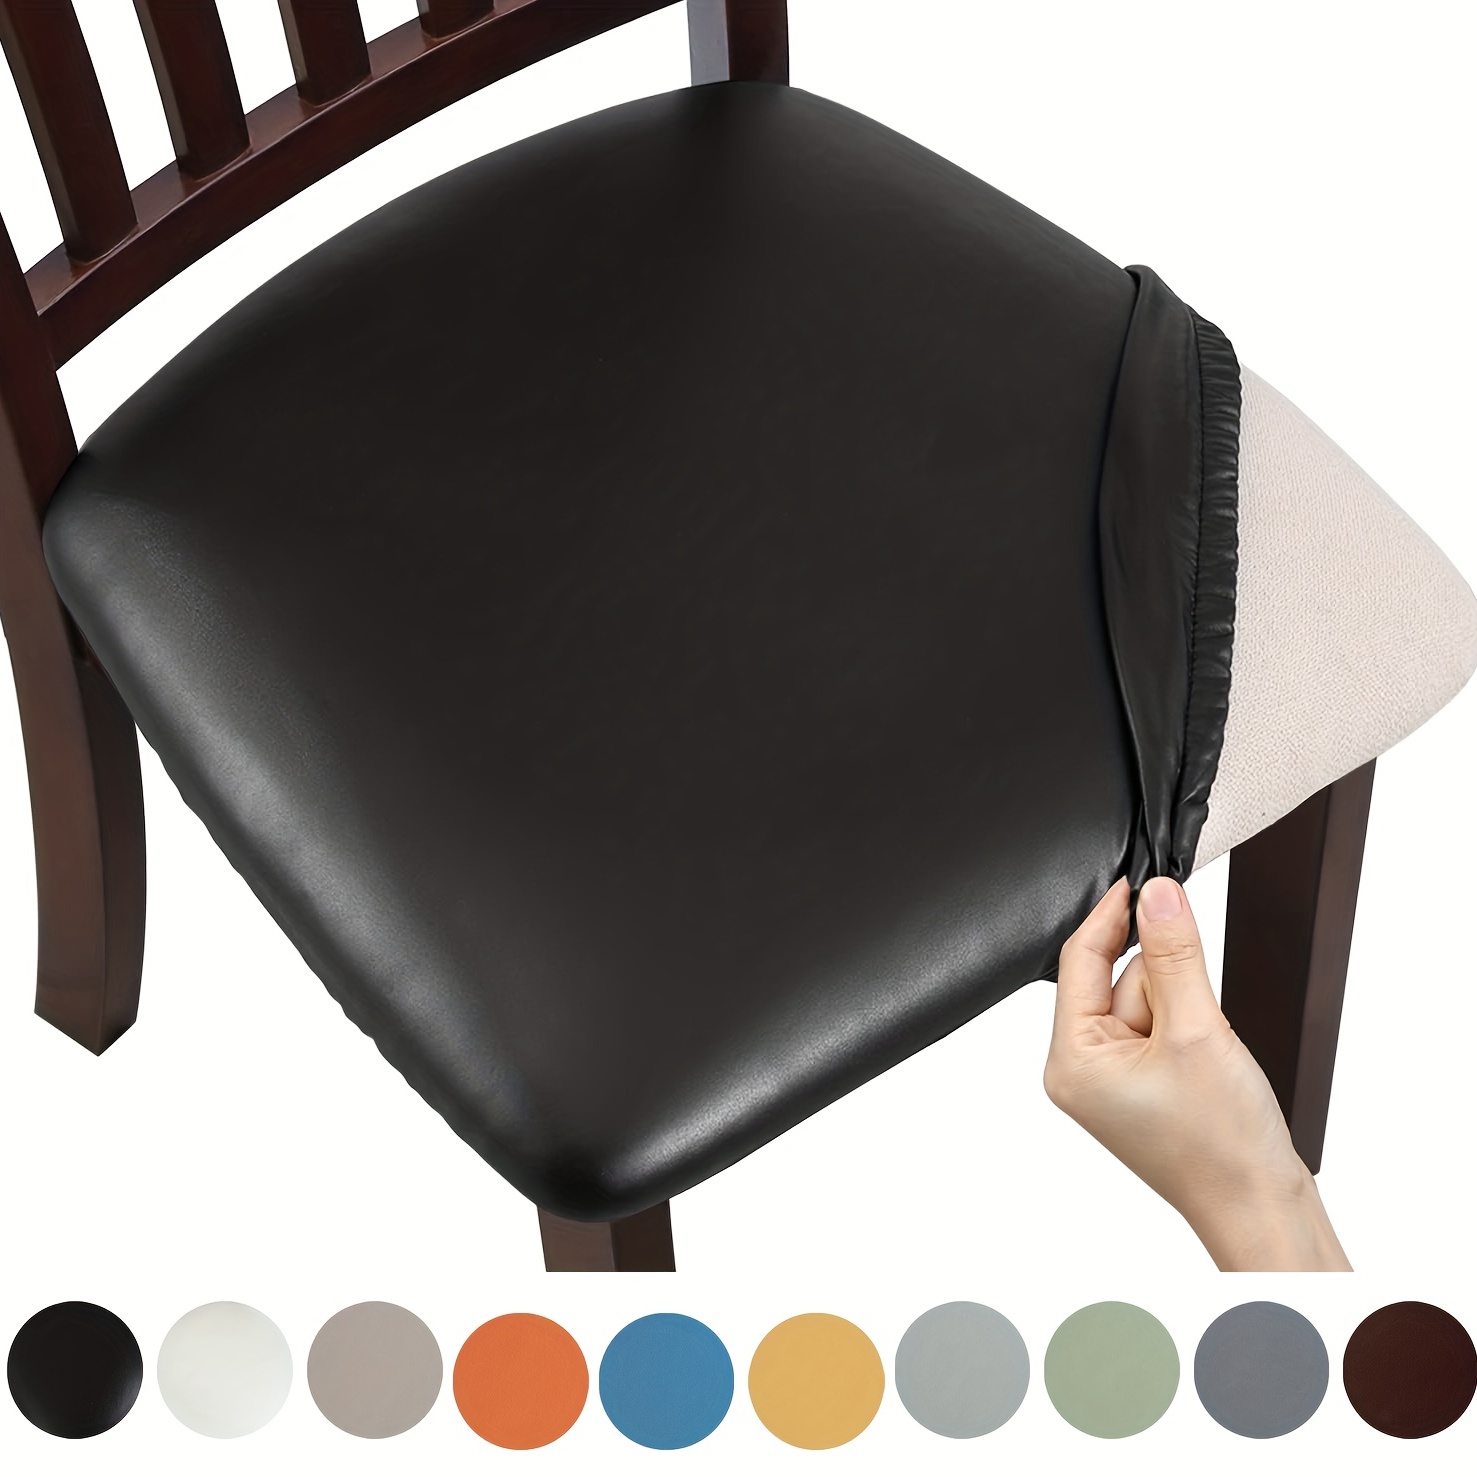  HAiHALA Cojín de cuero transpirable – Cojín redondo para silla  de comedor de cocina, cojín para silla de comedor – Cojín para silla de bar  – Cojín de asiento para silla